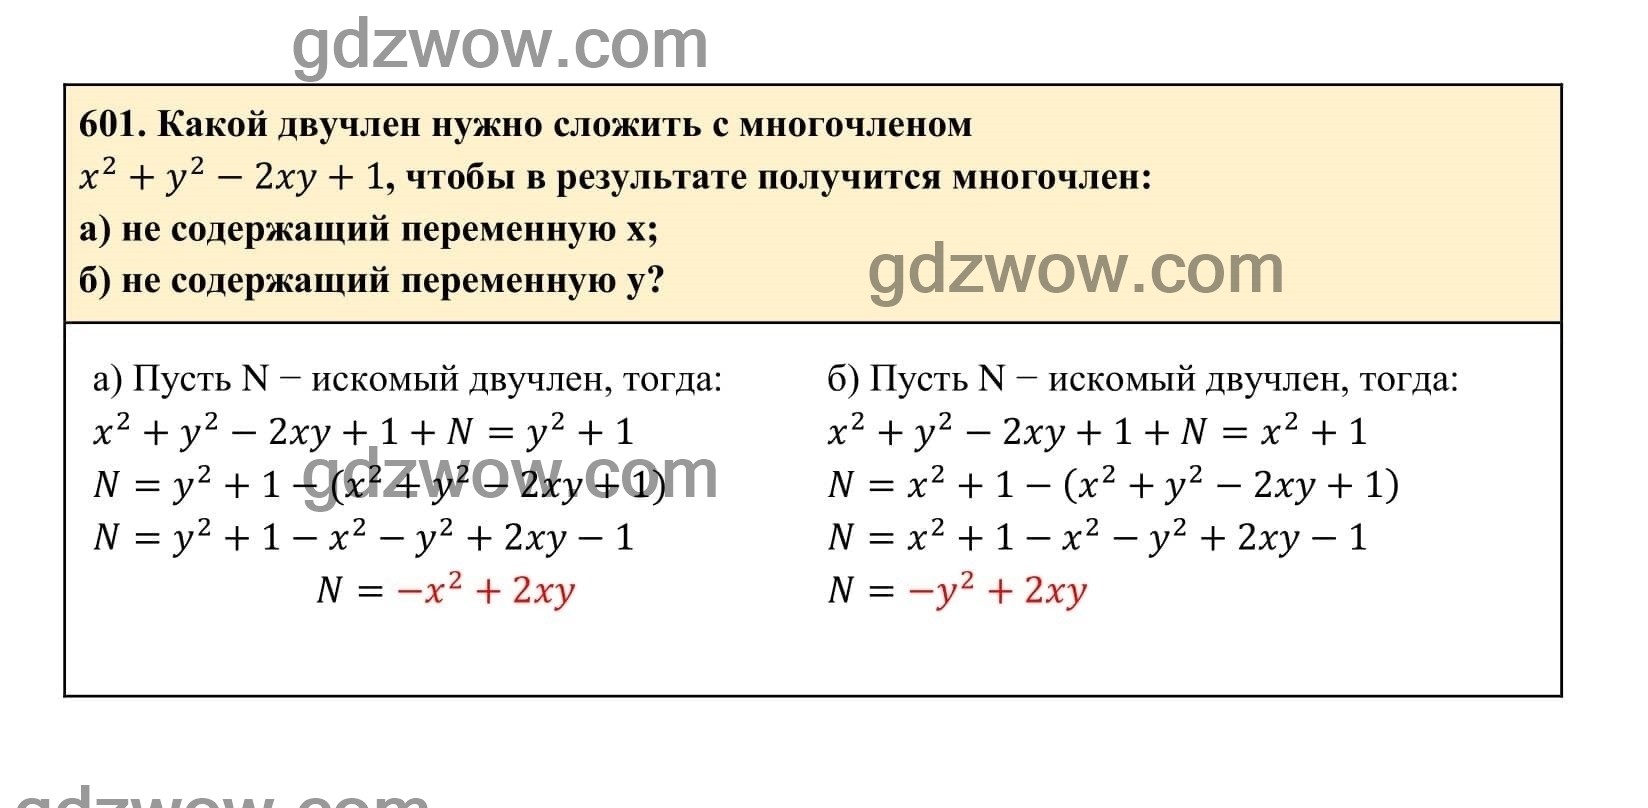 Упражнение 601 - ГДЗ по Алгебре 7 класс Учебник Макарычев (решебник) - GDZwow